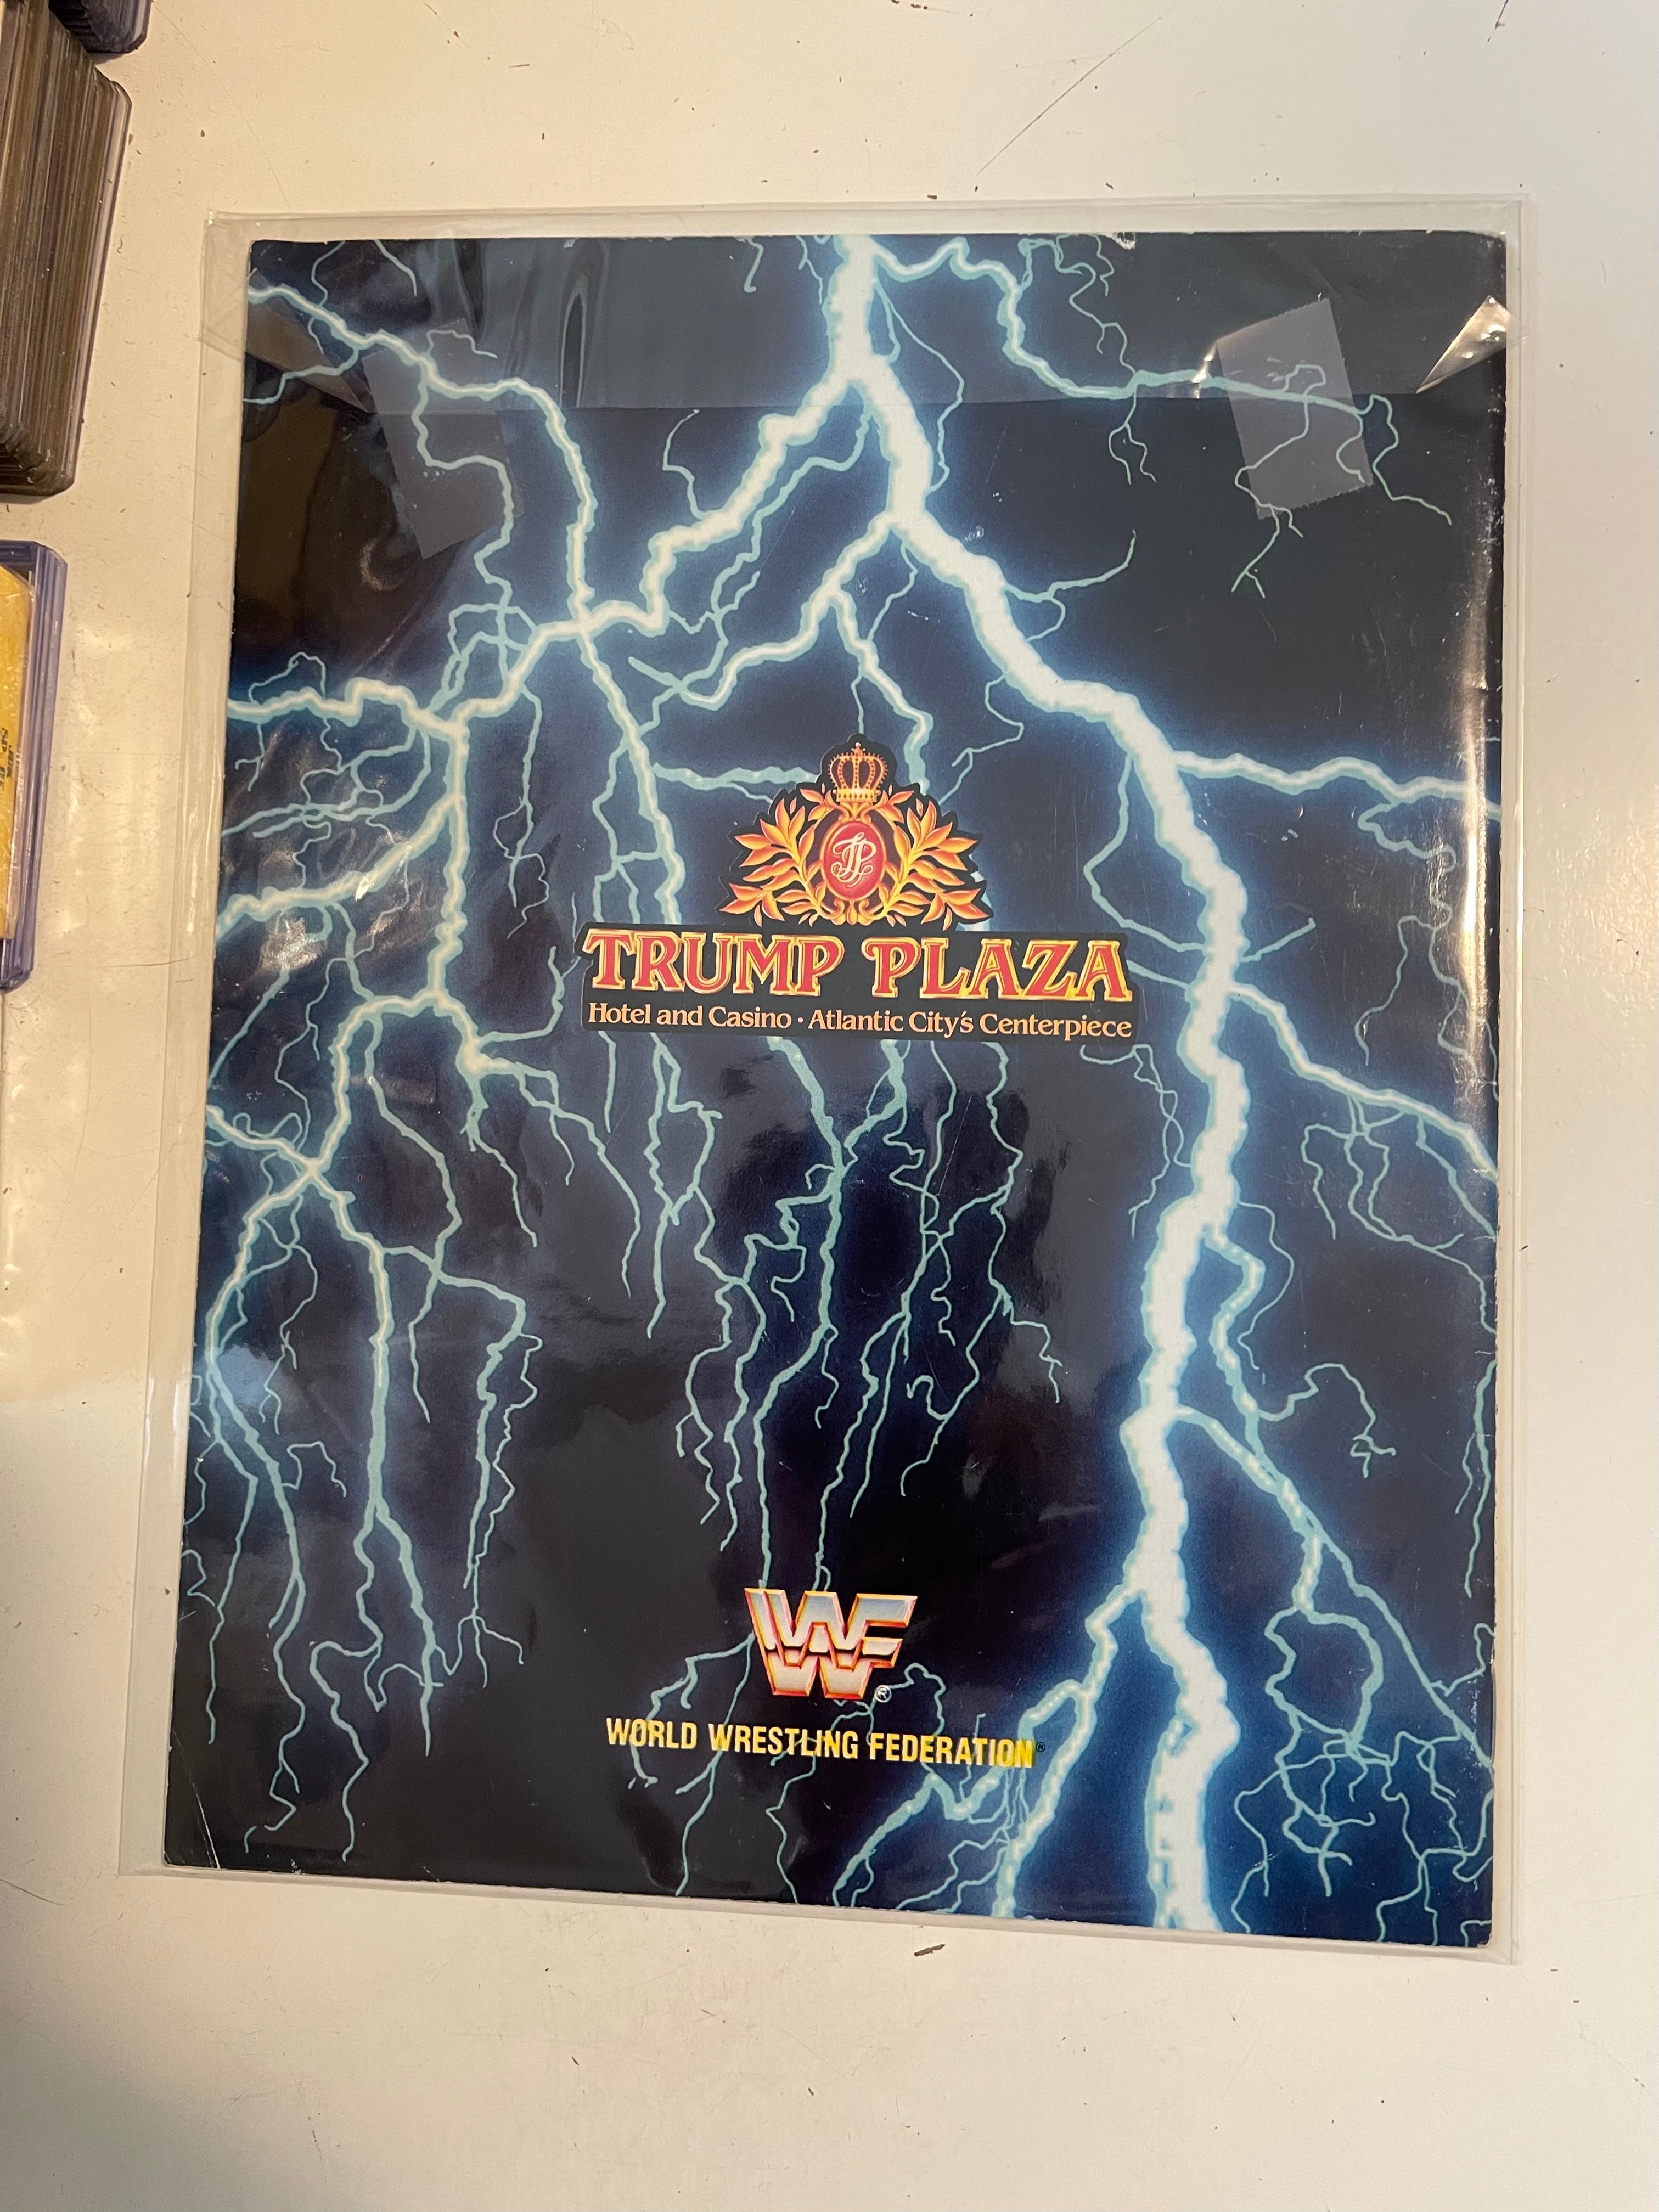 Wrestlemania 4 rare event program 1988